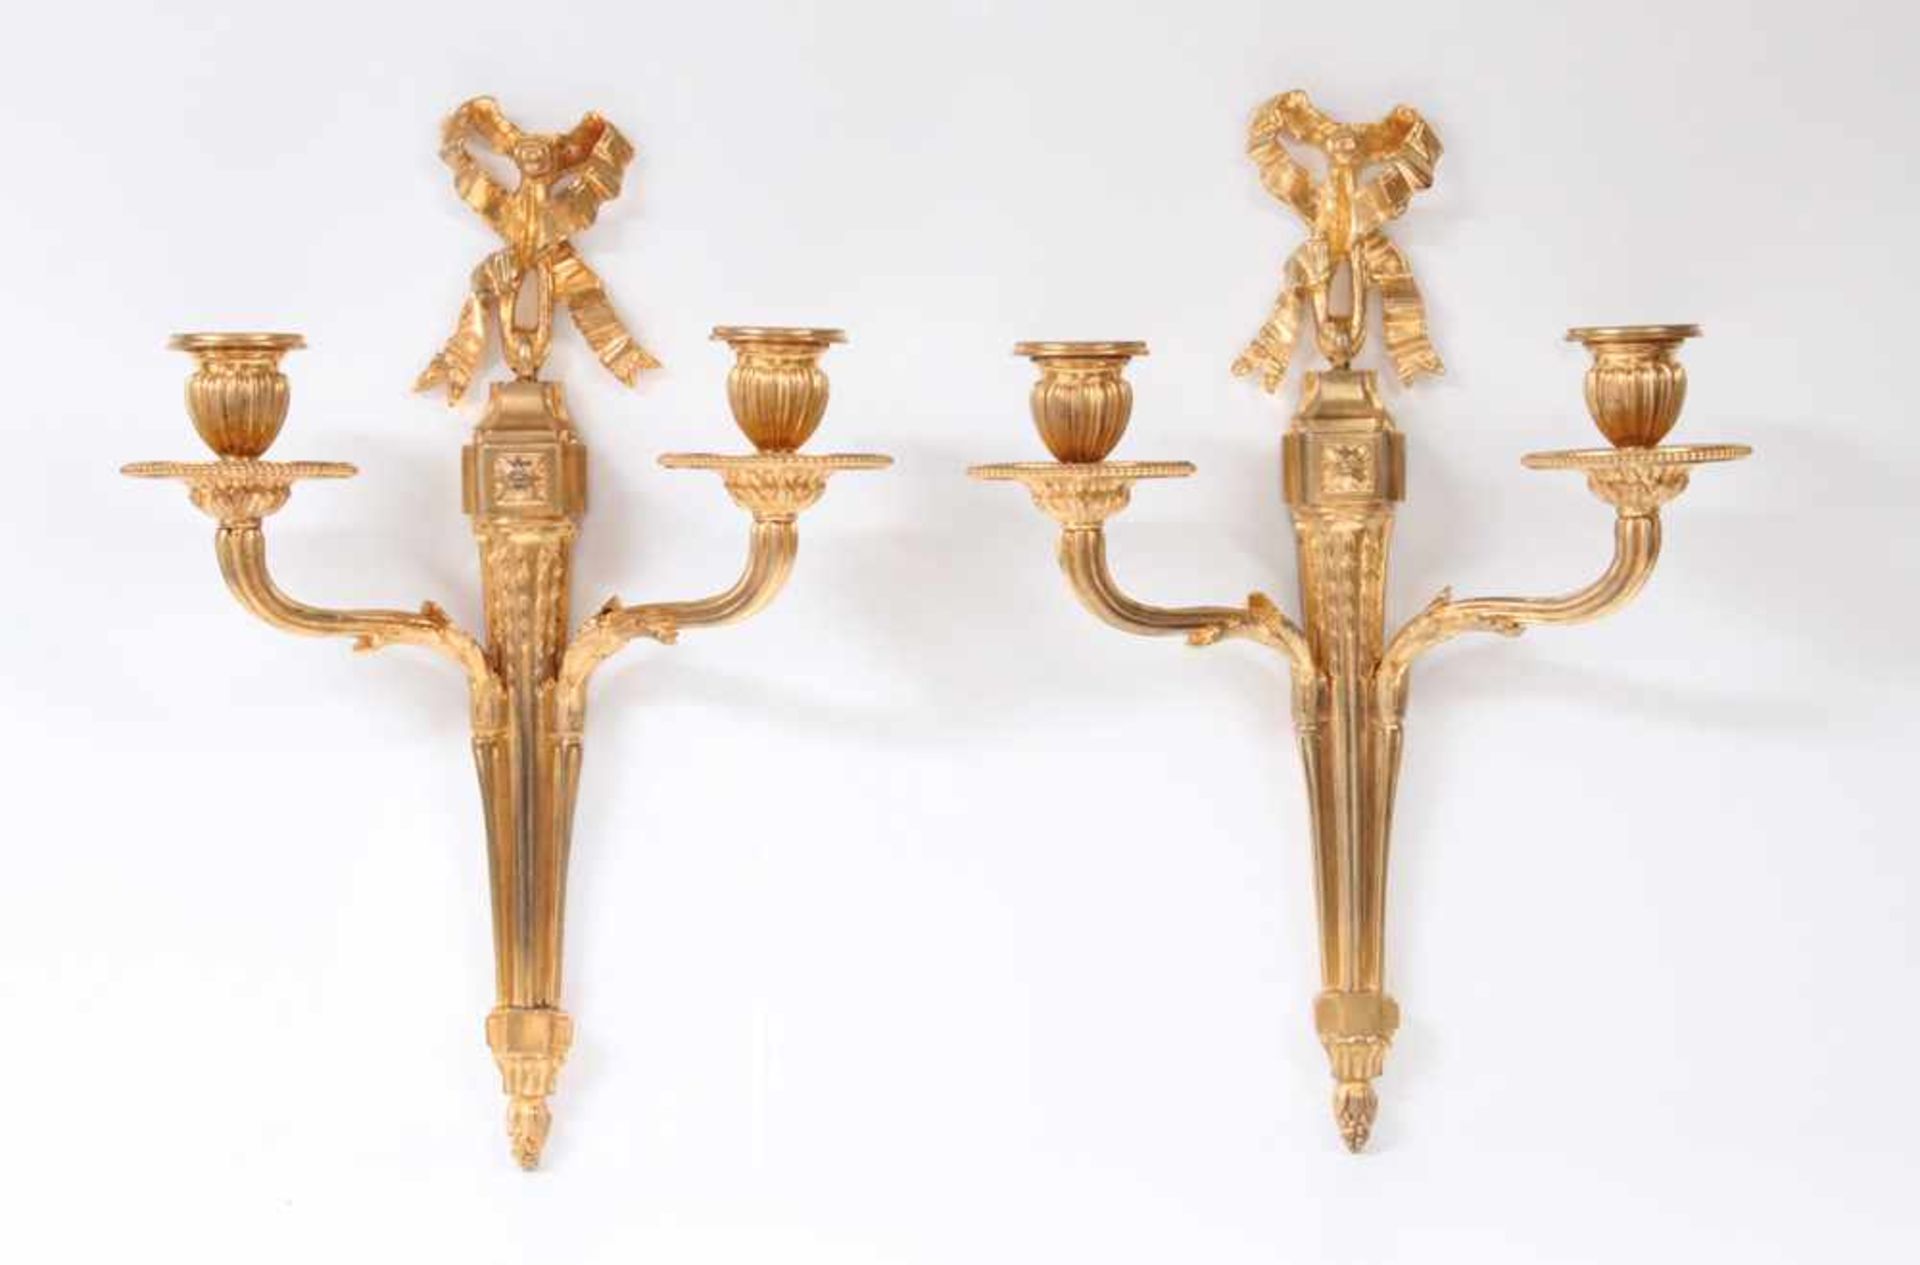 Paar Appliken.Frankreich, 19. Jh. Bronze vergoldet, zweiarmig mit Schleifenbekrönung. H: 36 cm.